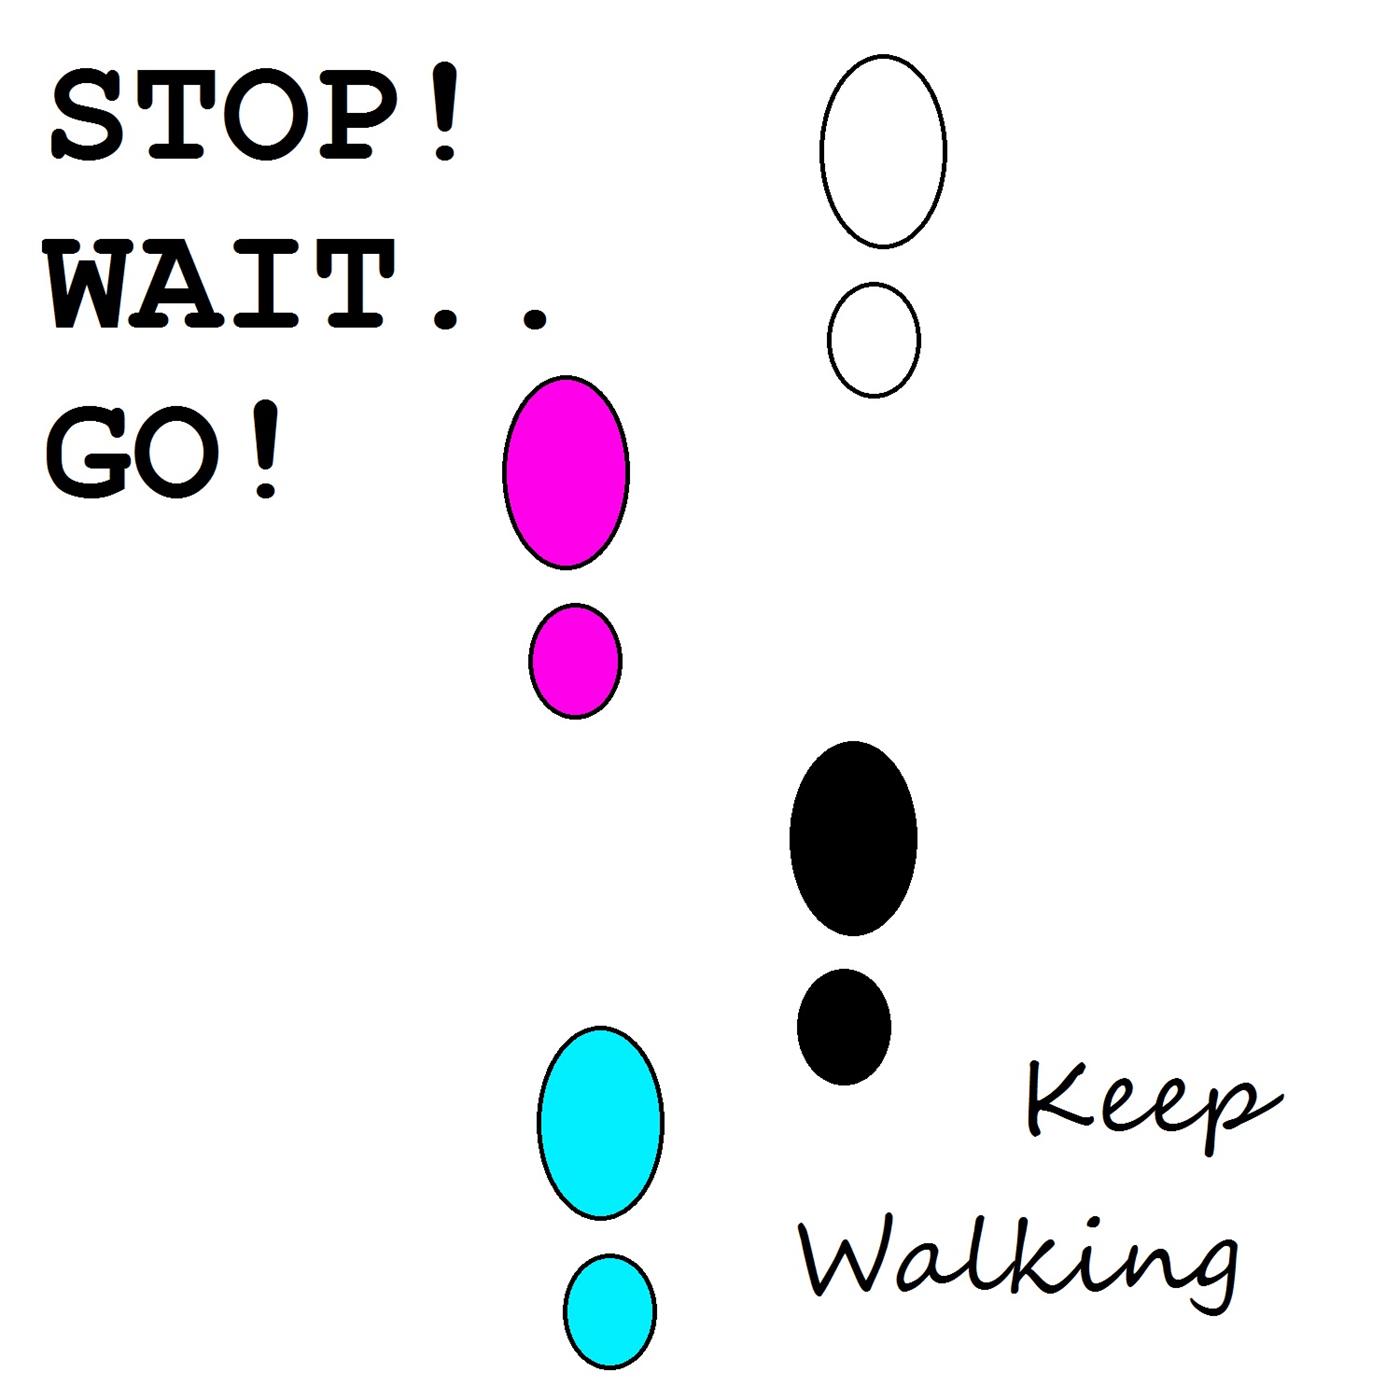 Keep Walking